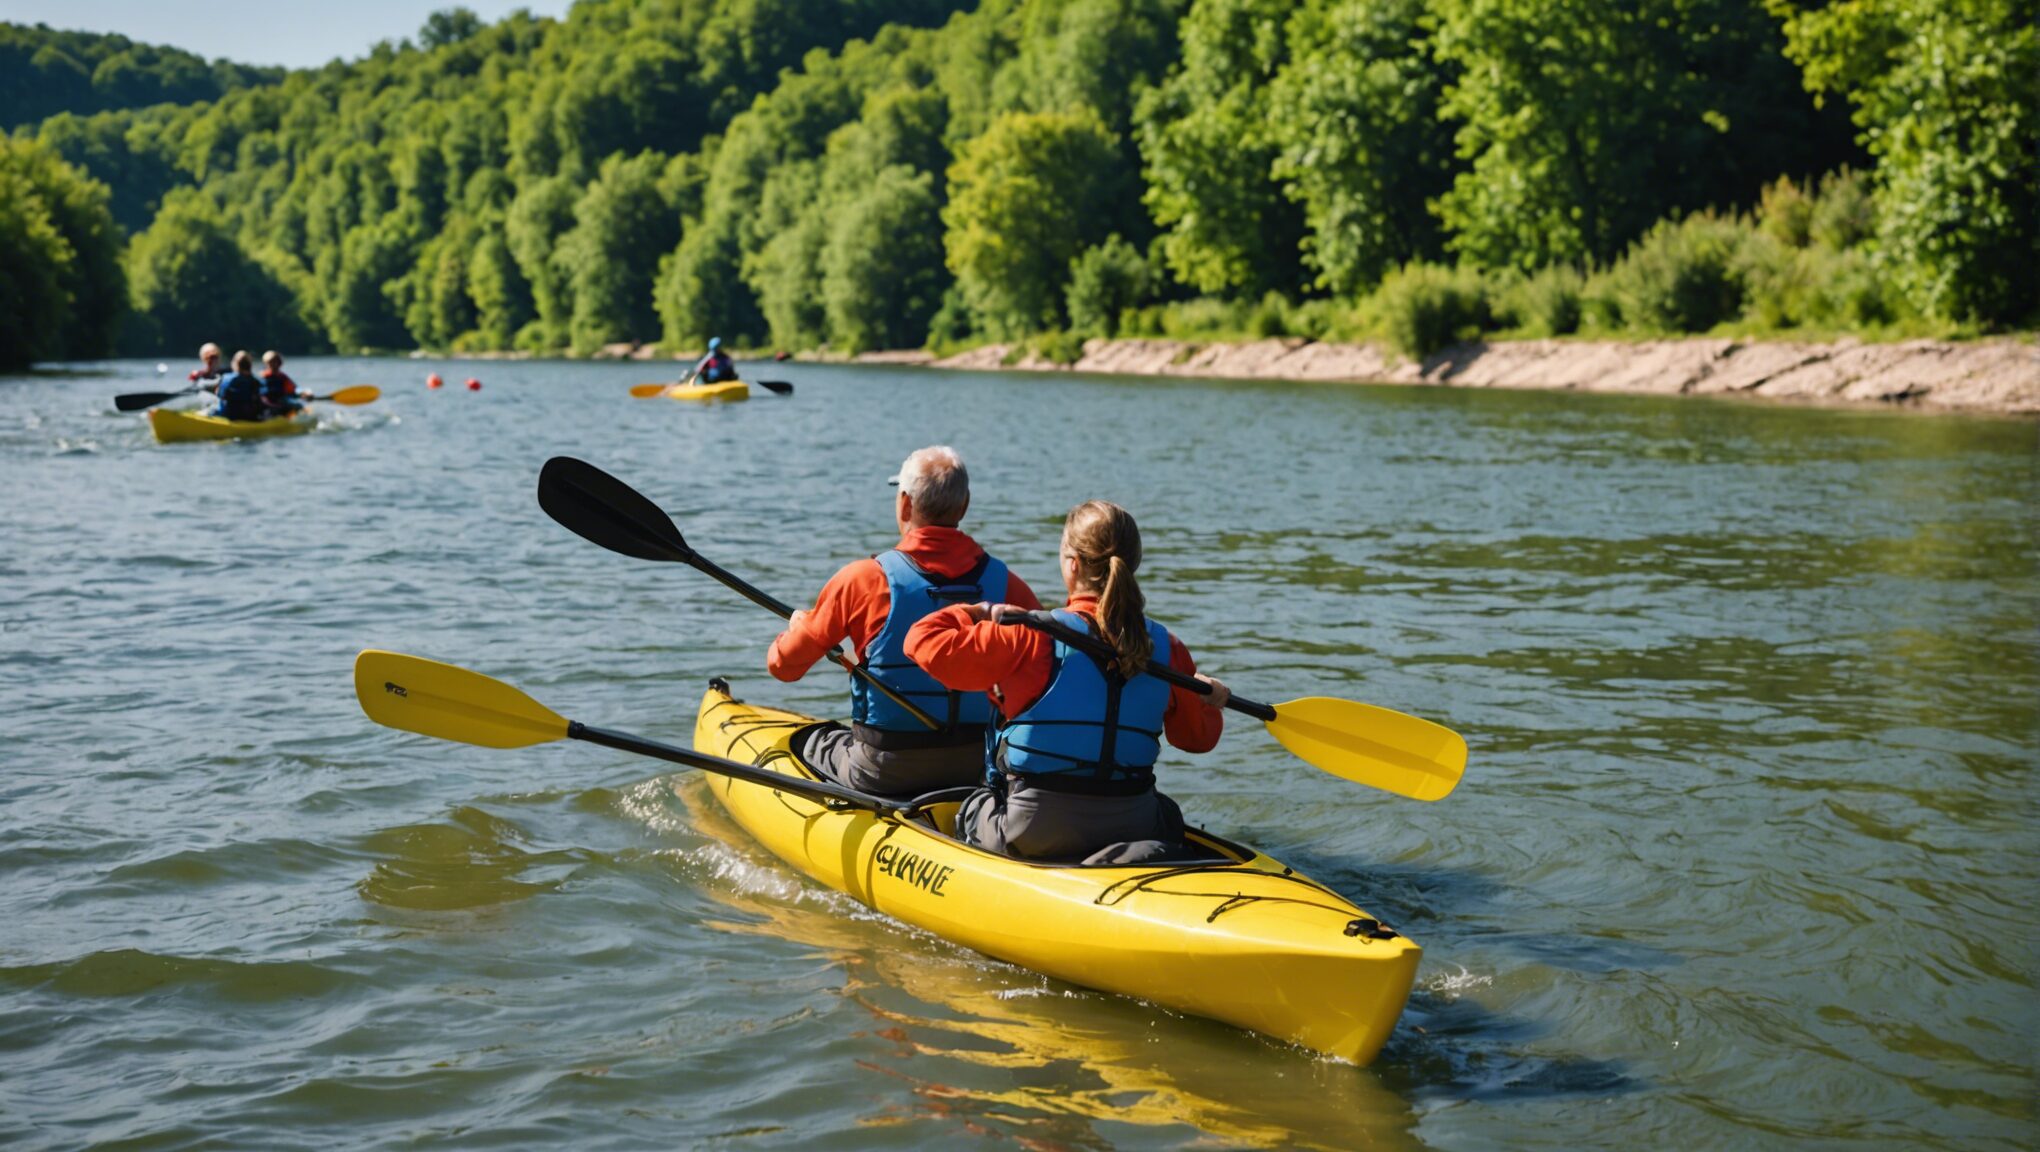 découvrez comment vivre une aventure inoubliable en famille en pratiquant le canoë-kayak sur la dordogne et créez des souvenirs mémorables ensemble.